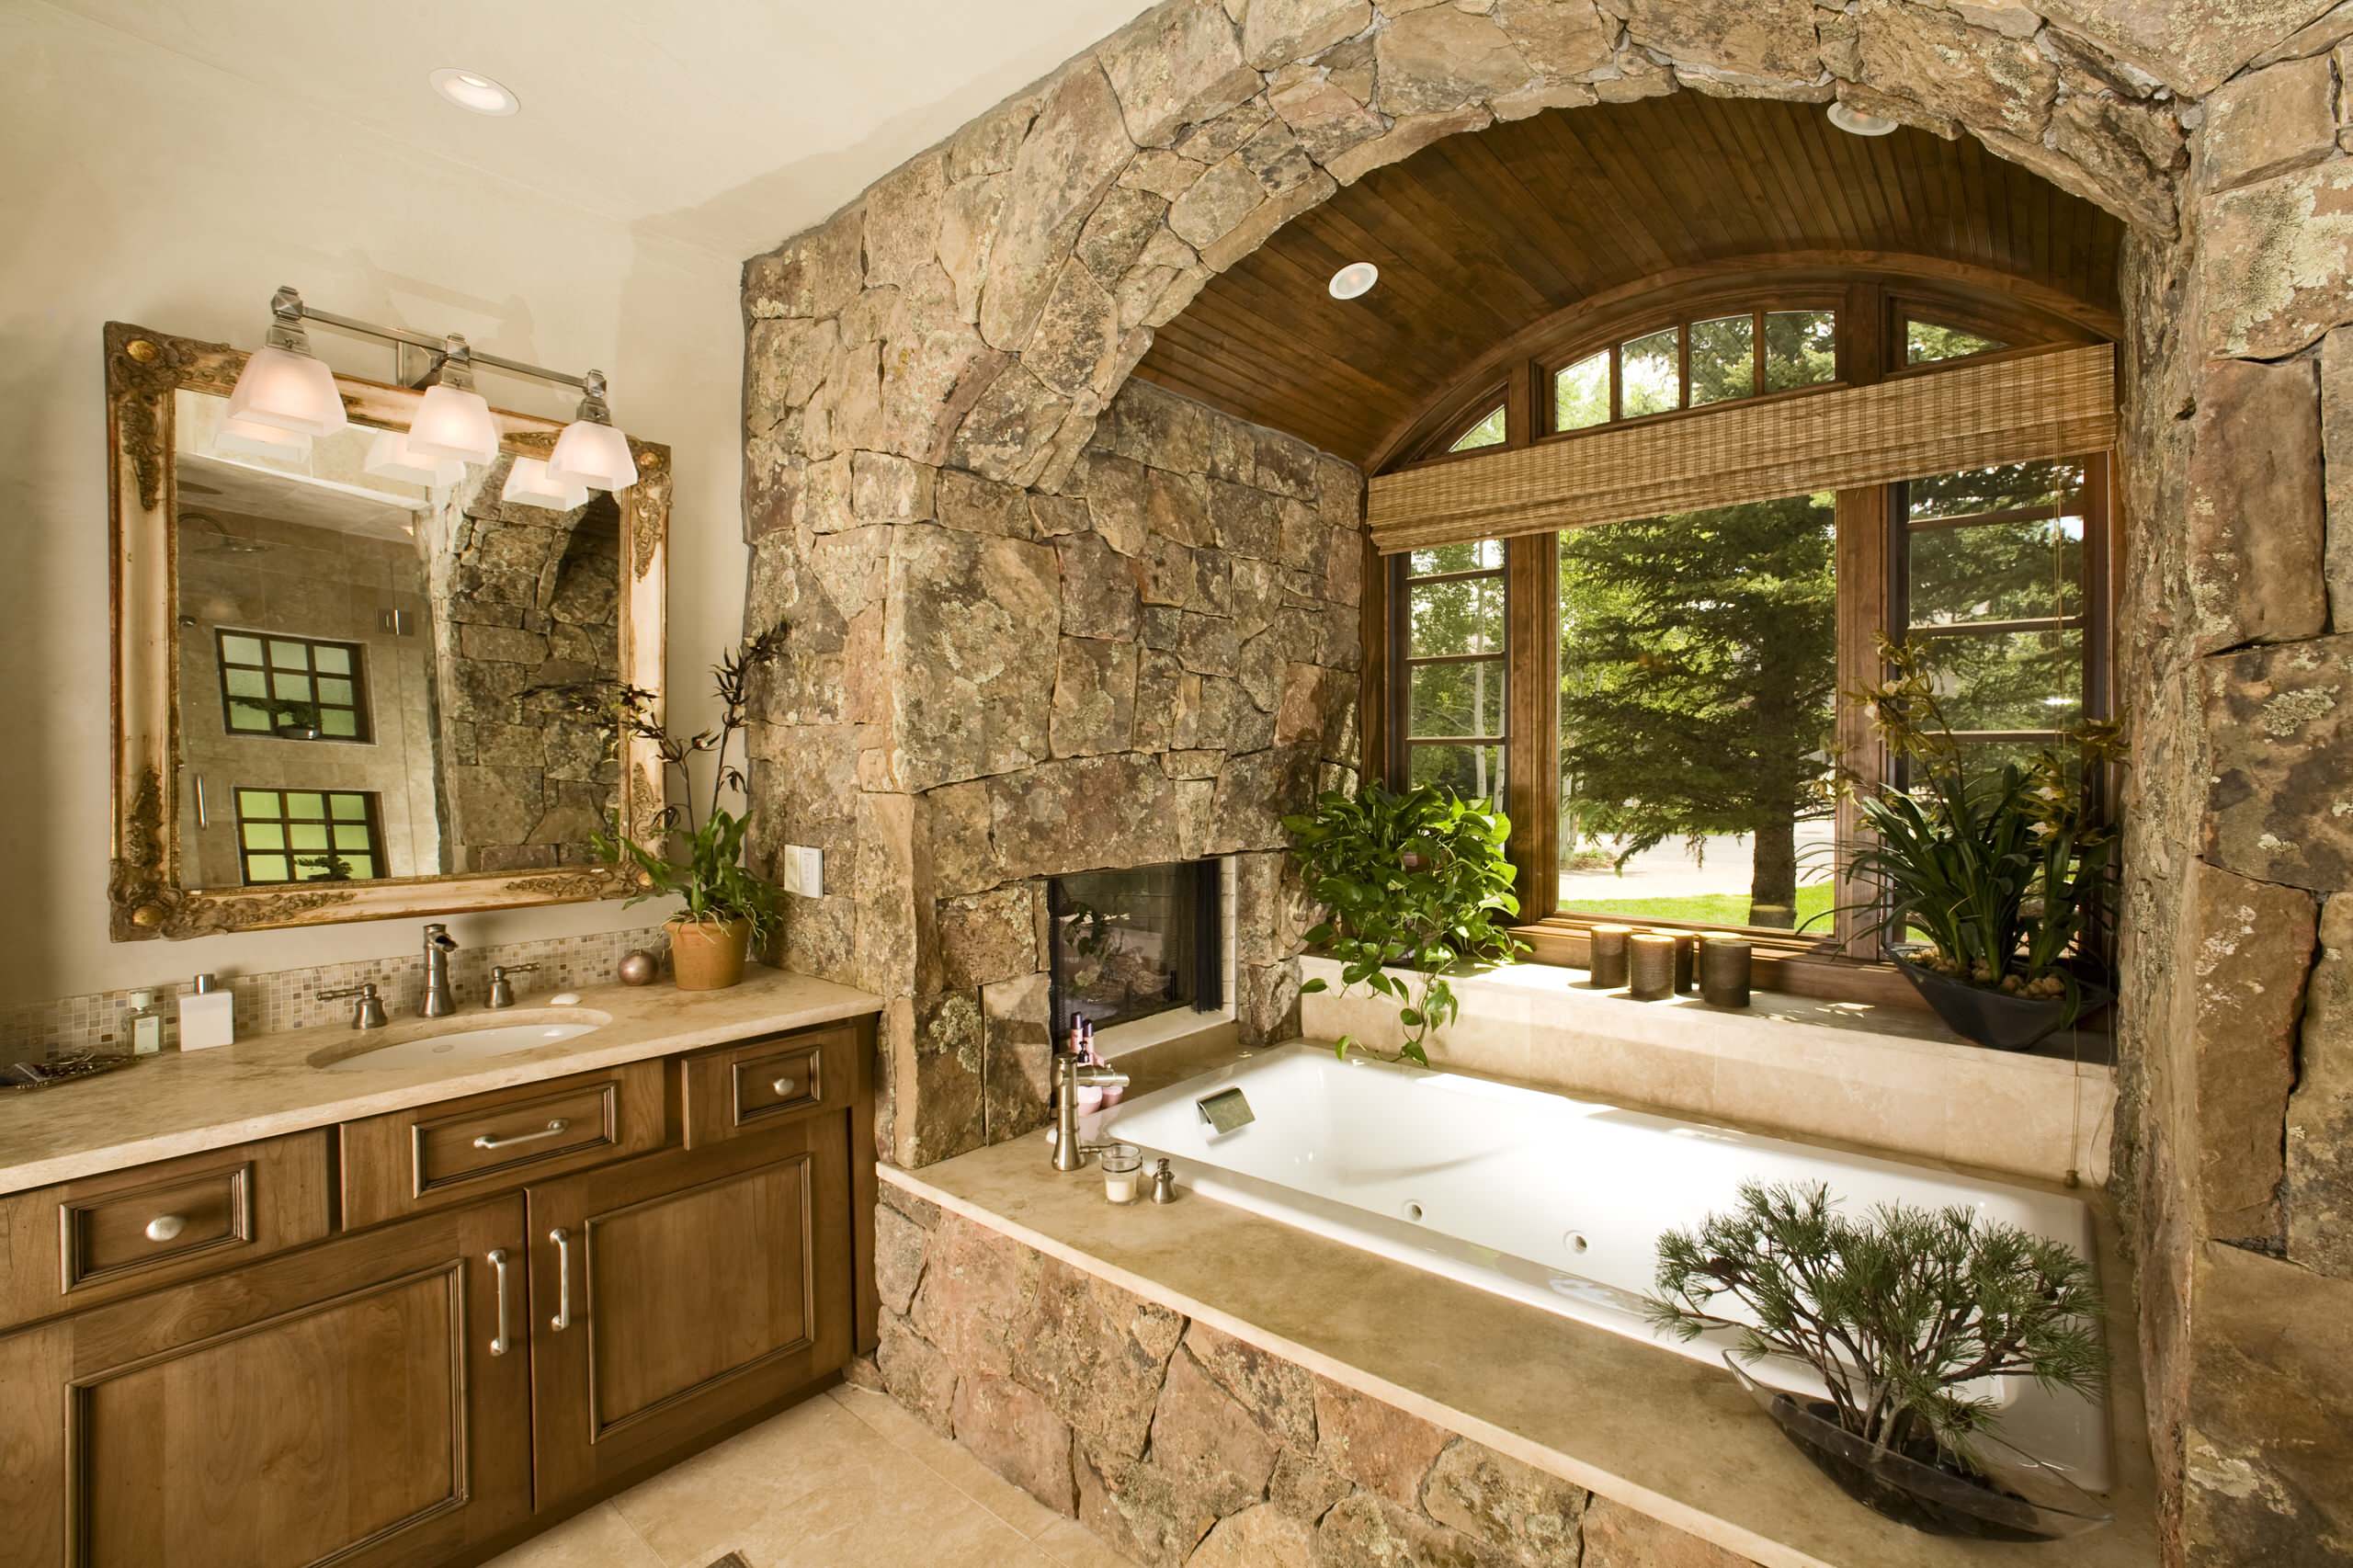 Stone room. Ванная отделанная камнем. Уютная ванная комната. Шикарная ванная комната. Отделка камнем в интерьере.